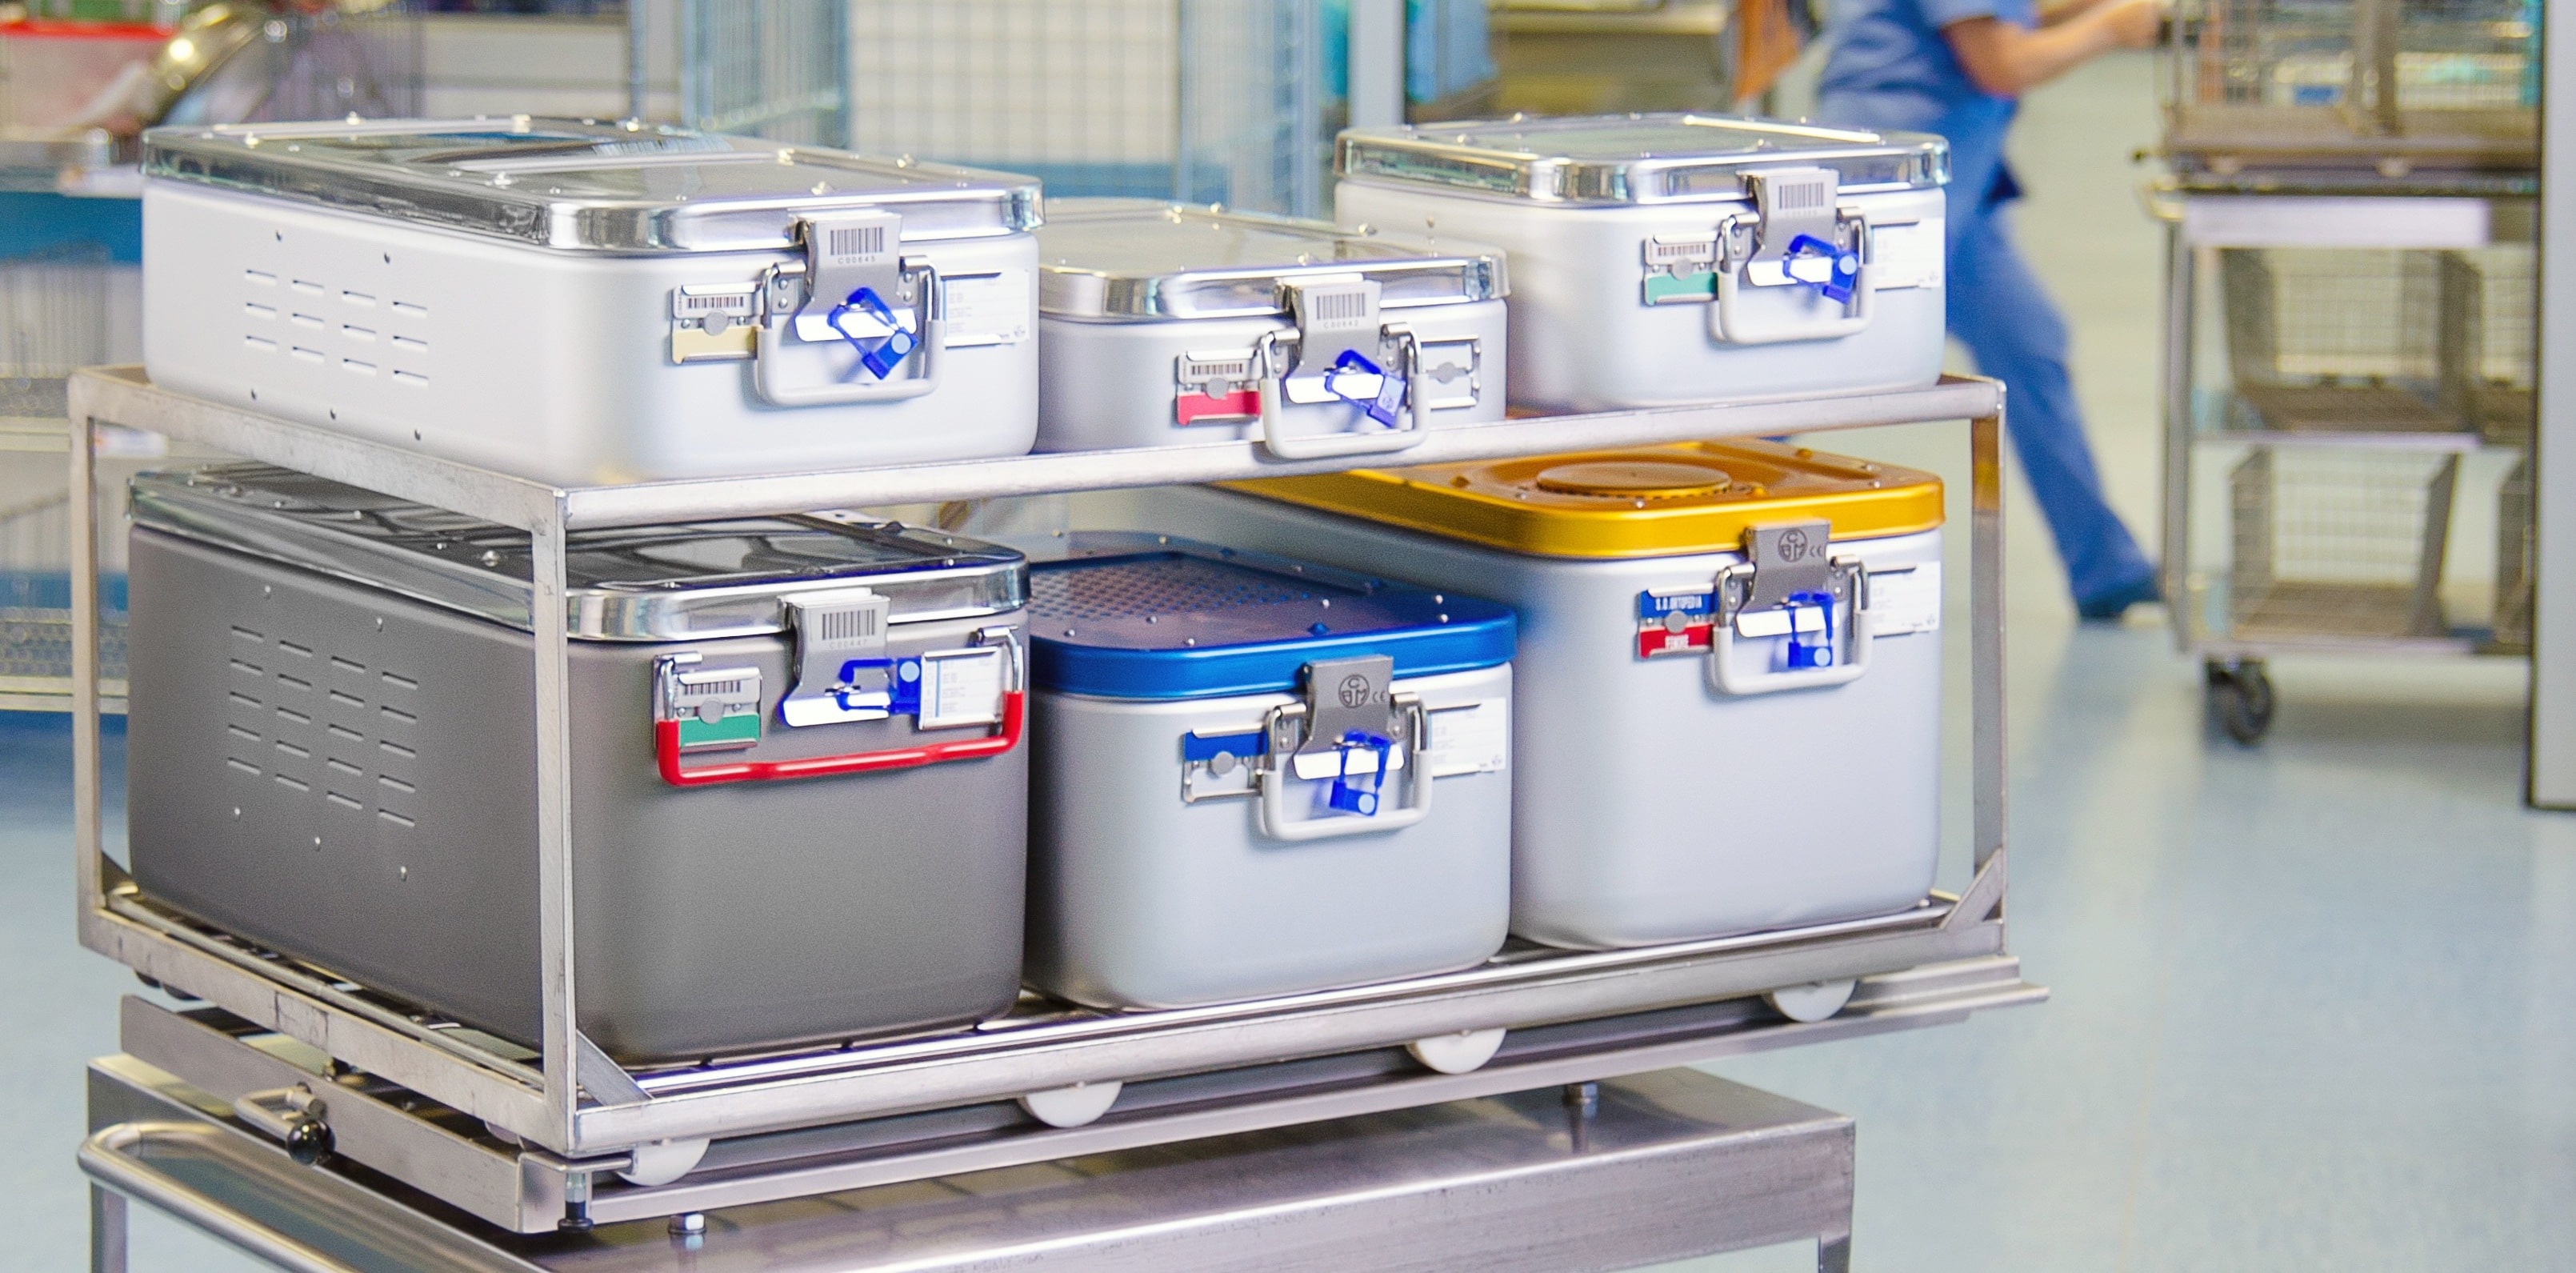 Sterilization containers